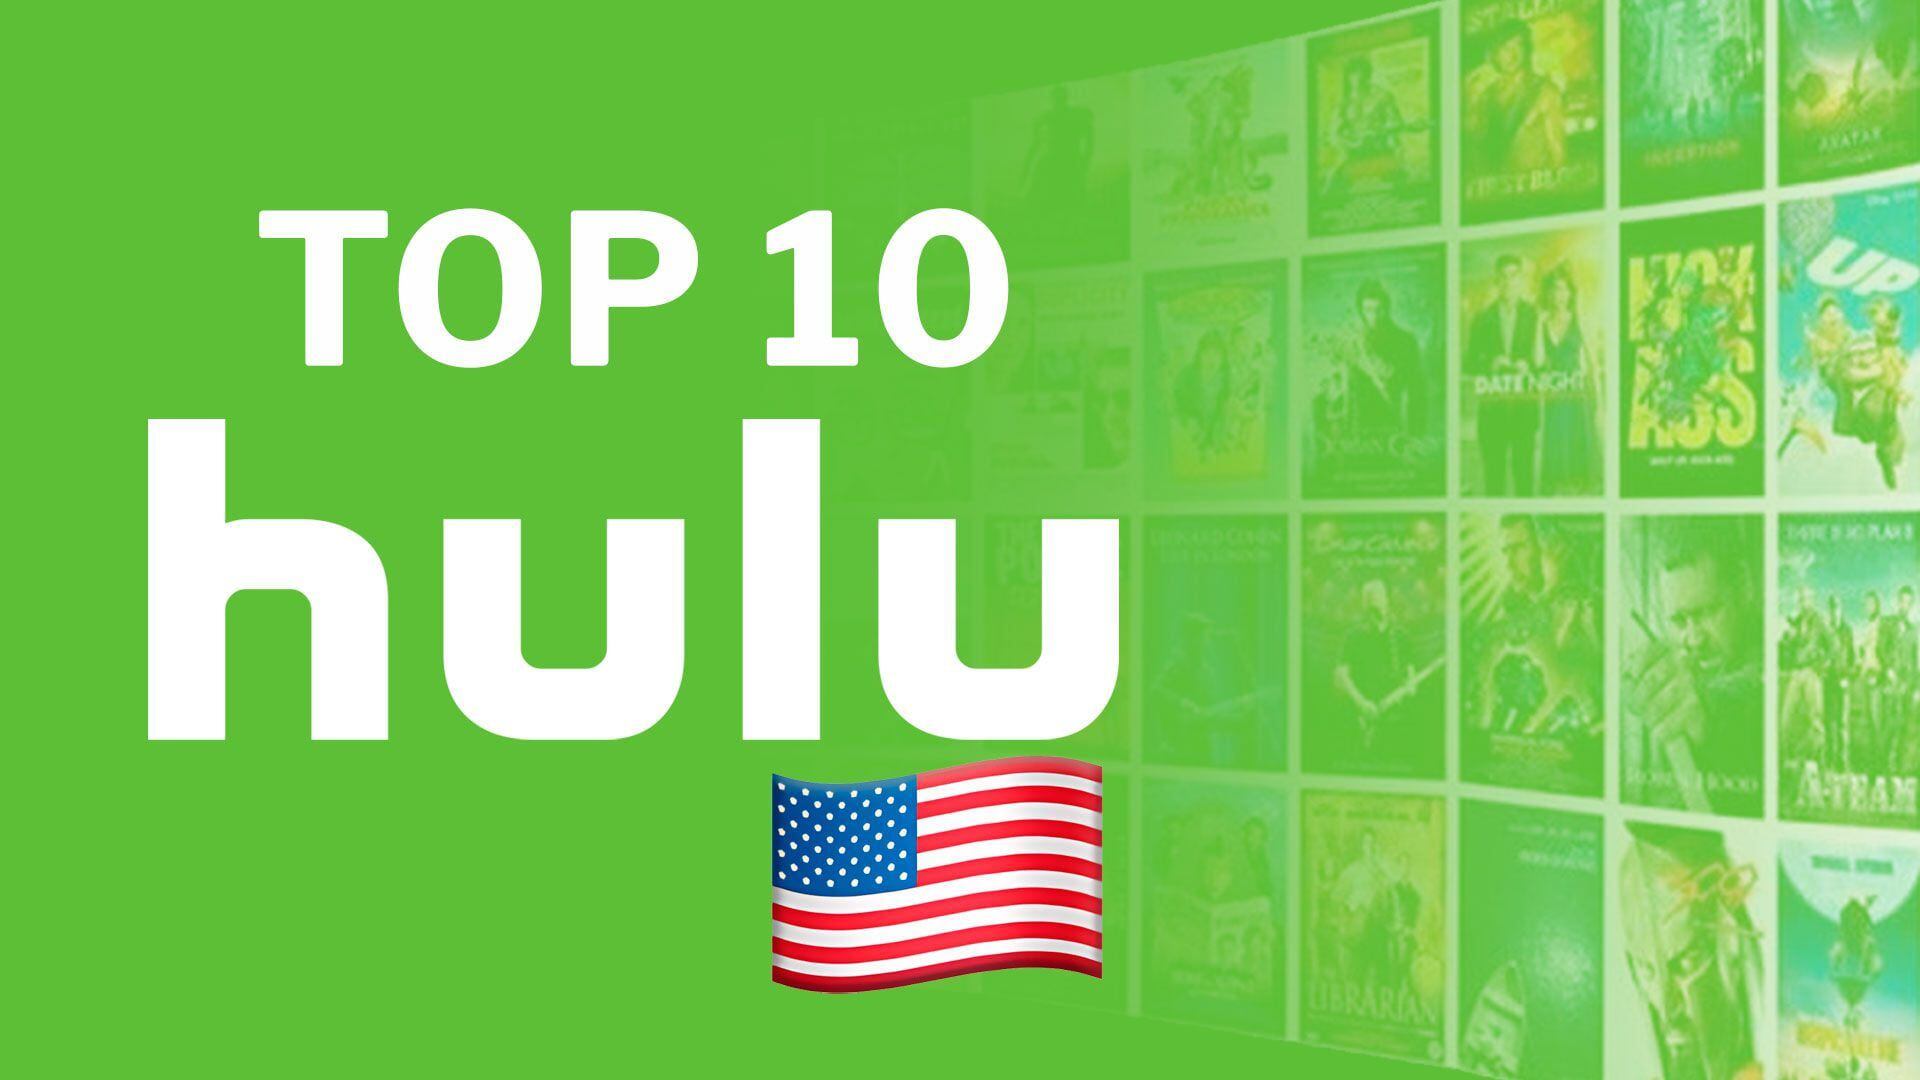 Más de una docena de servicios de streaming compiten de forma feroz para ser los reyes del mercado, entre ellos Hulu. (Infobae)